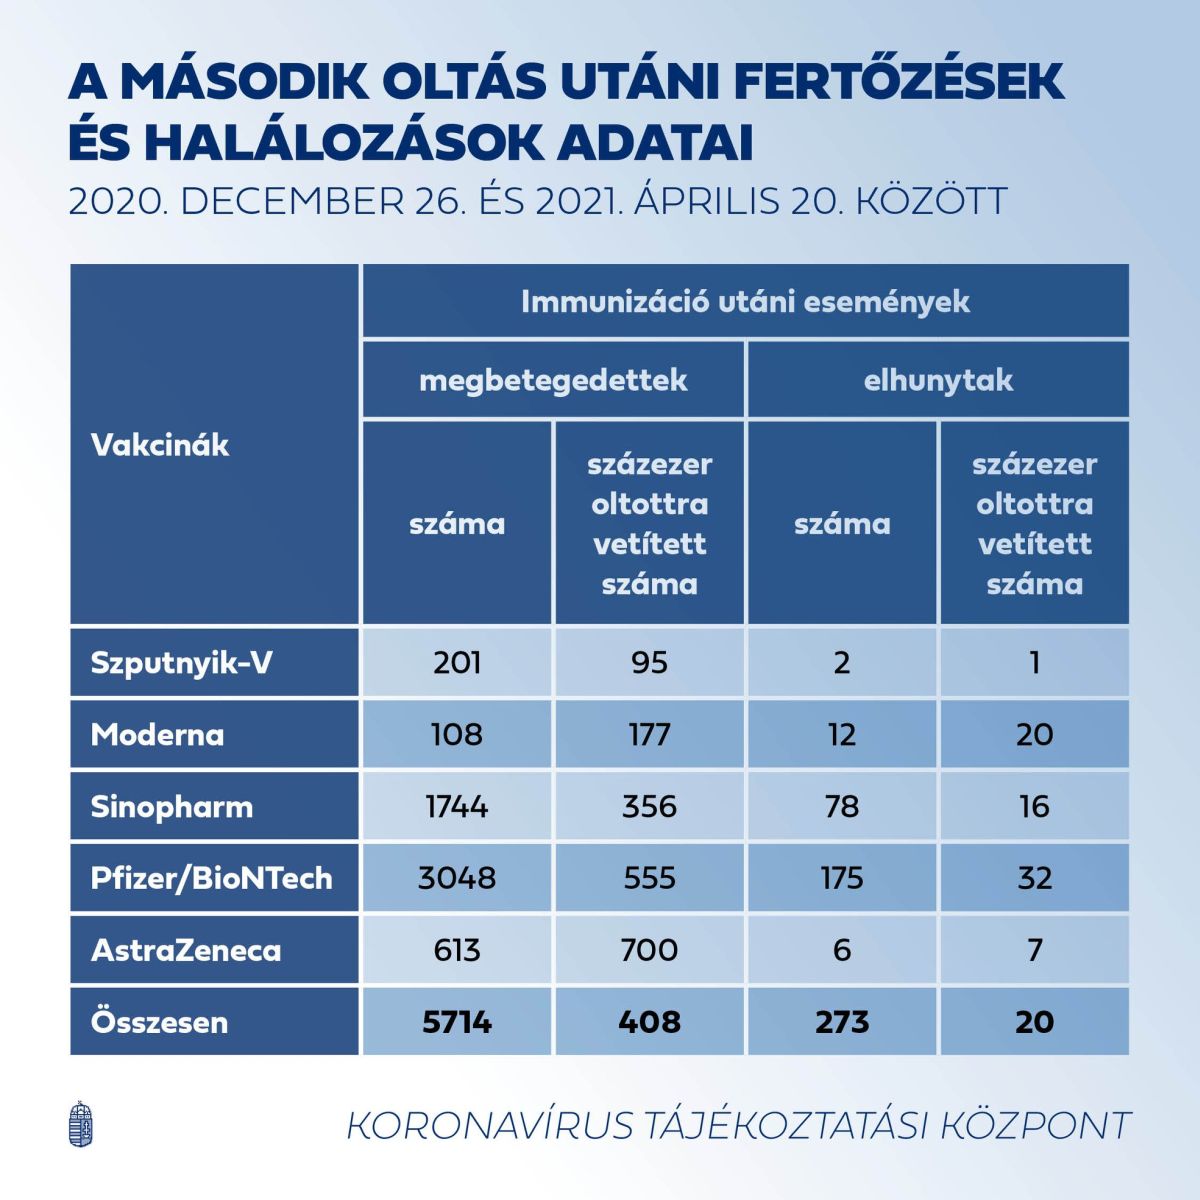 Palkovics szerint nem kellene kritizálni a kormány vakcinatáblázatát, „elég bajunk van a vírushelyzettel”